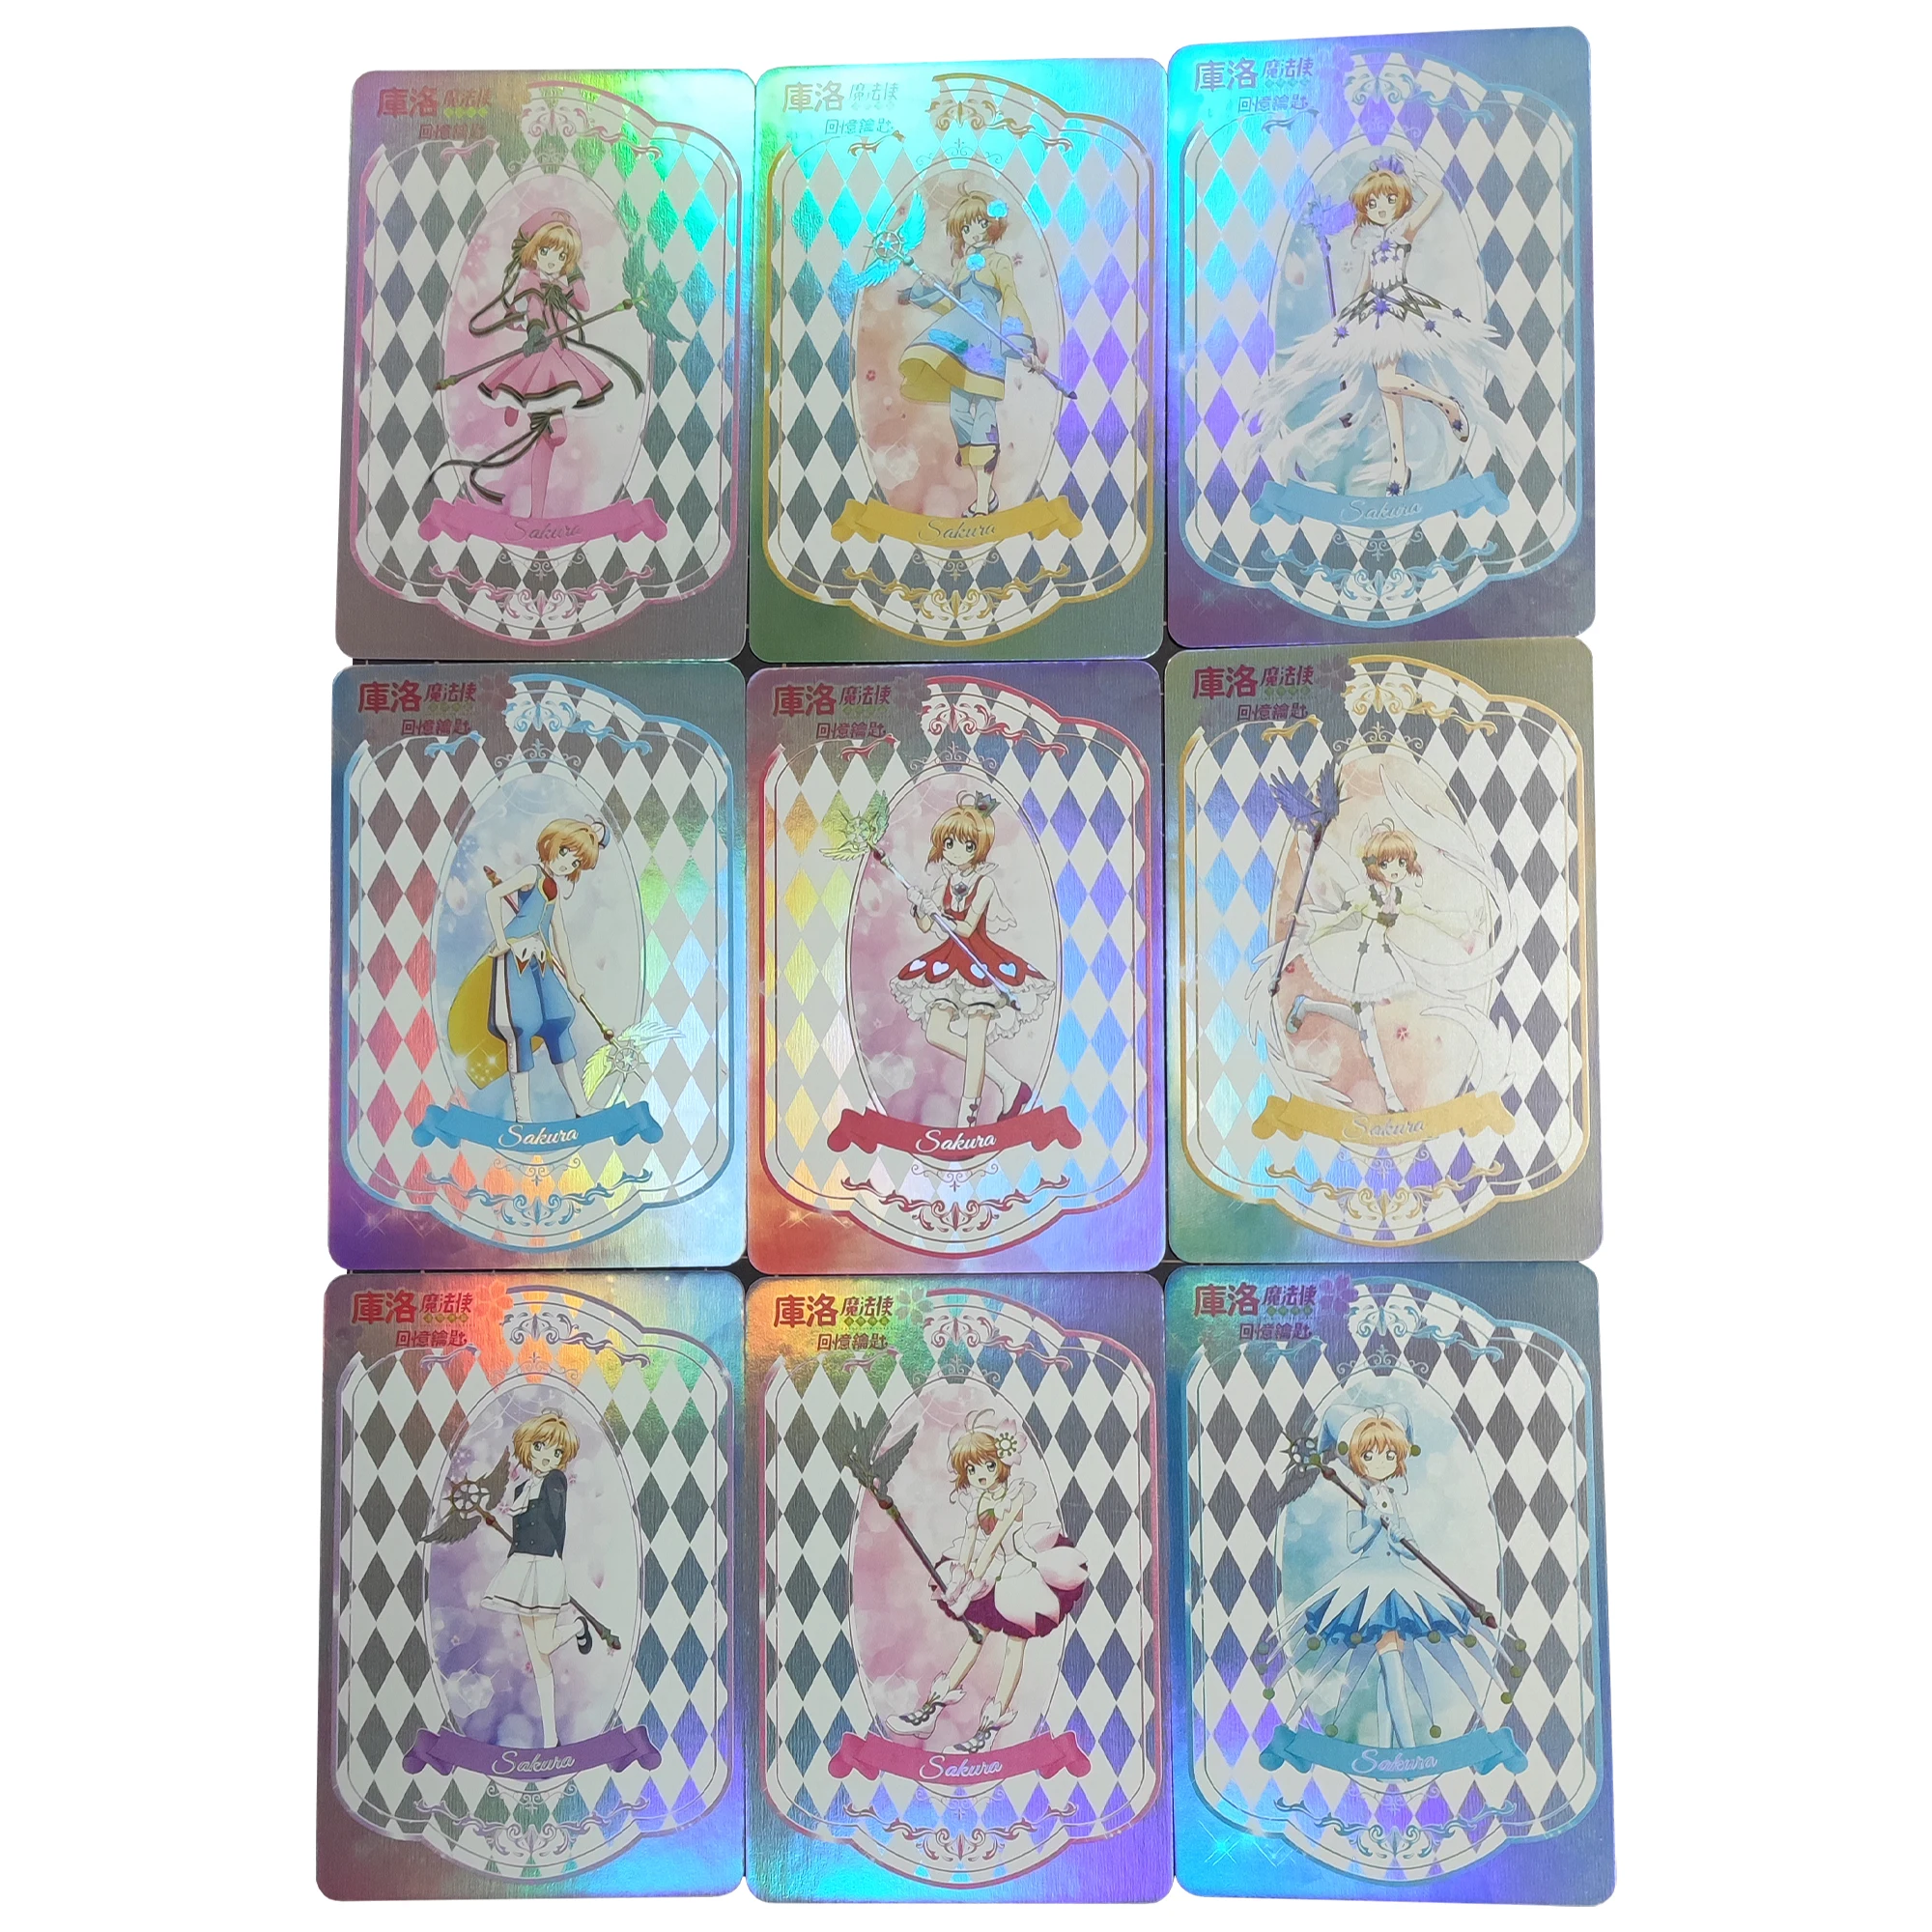 

9Pcs/set Card Captor Kinomoto Sakura Flash Card ACG Kawaii Classic Game Anime Collection Cards Diy Gift Toys